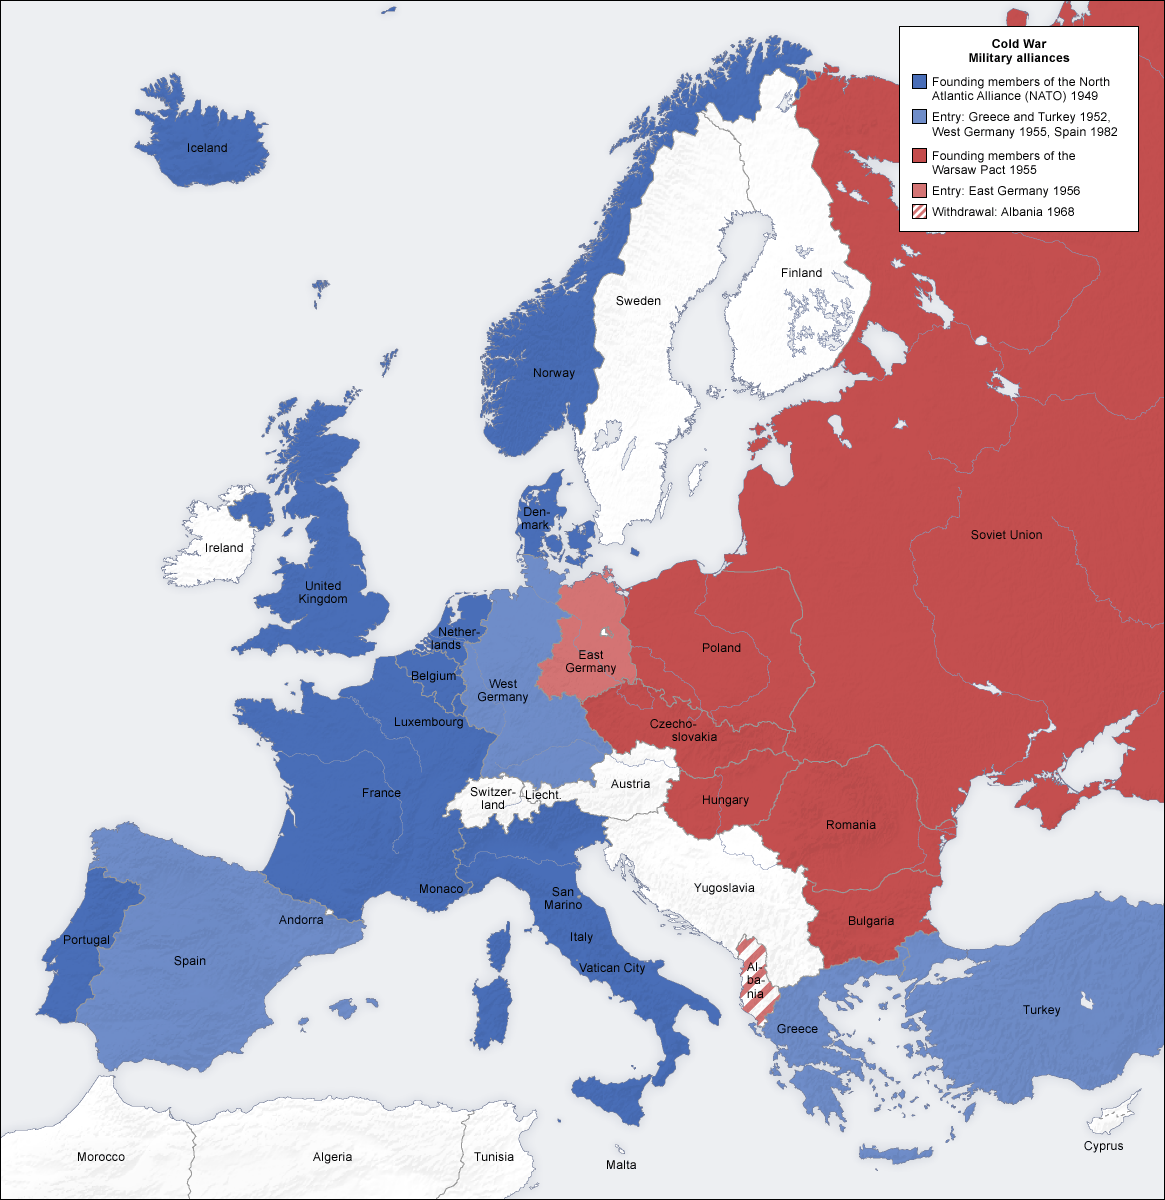 冷戦期のヨーロッパ勢力図。青がNATO、赤がワルシャワ条約機構、白が両同盟に属さない国家である。濃い色は発足時の加盟国、薄い色はその後の加盟国を指す。